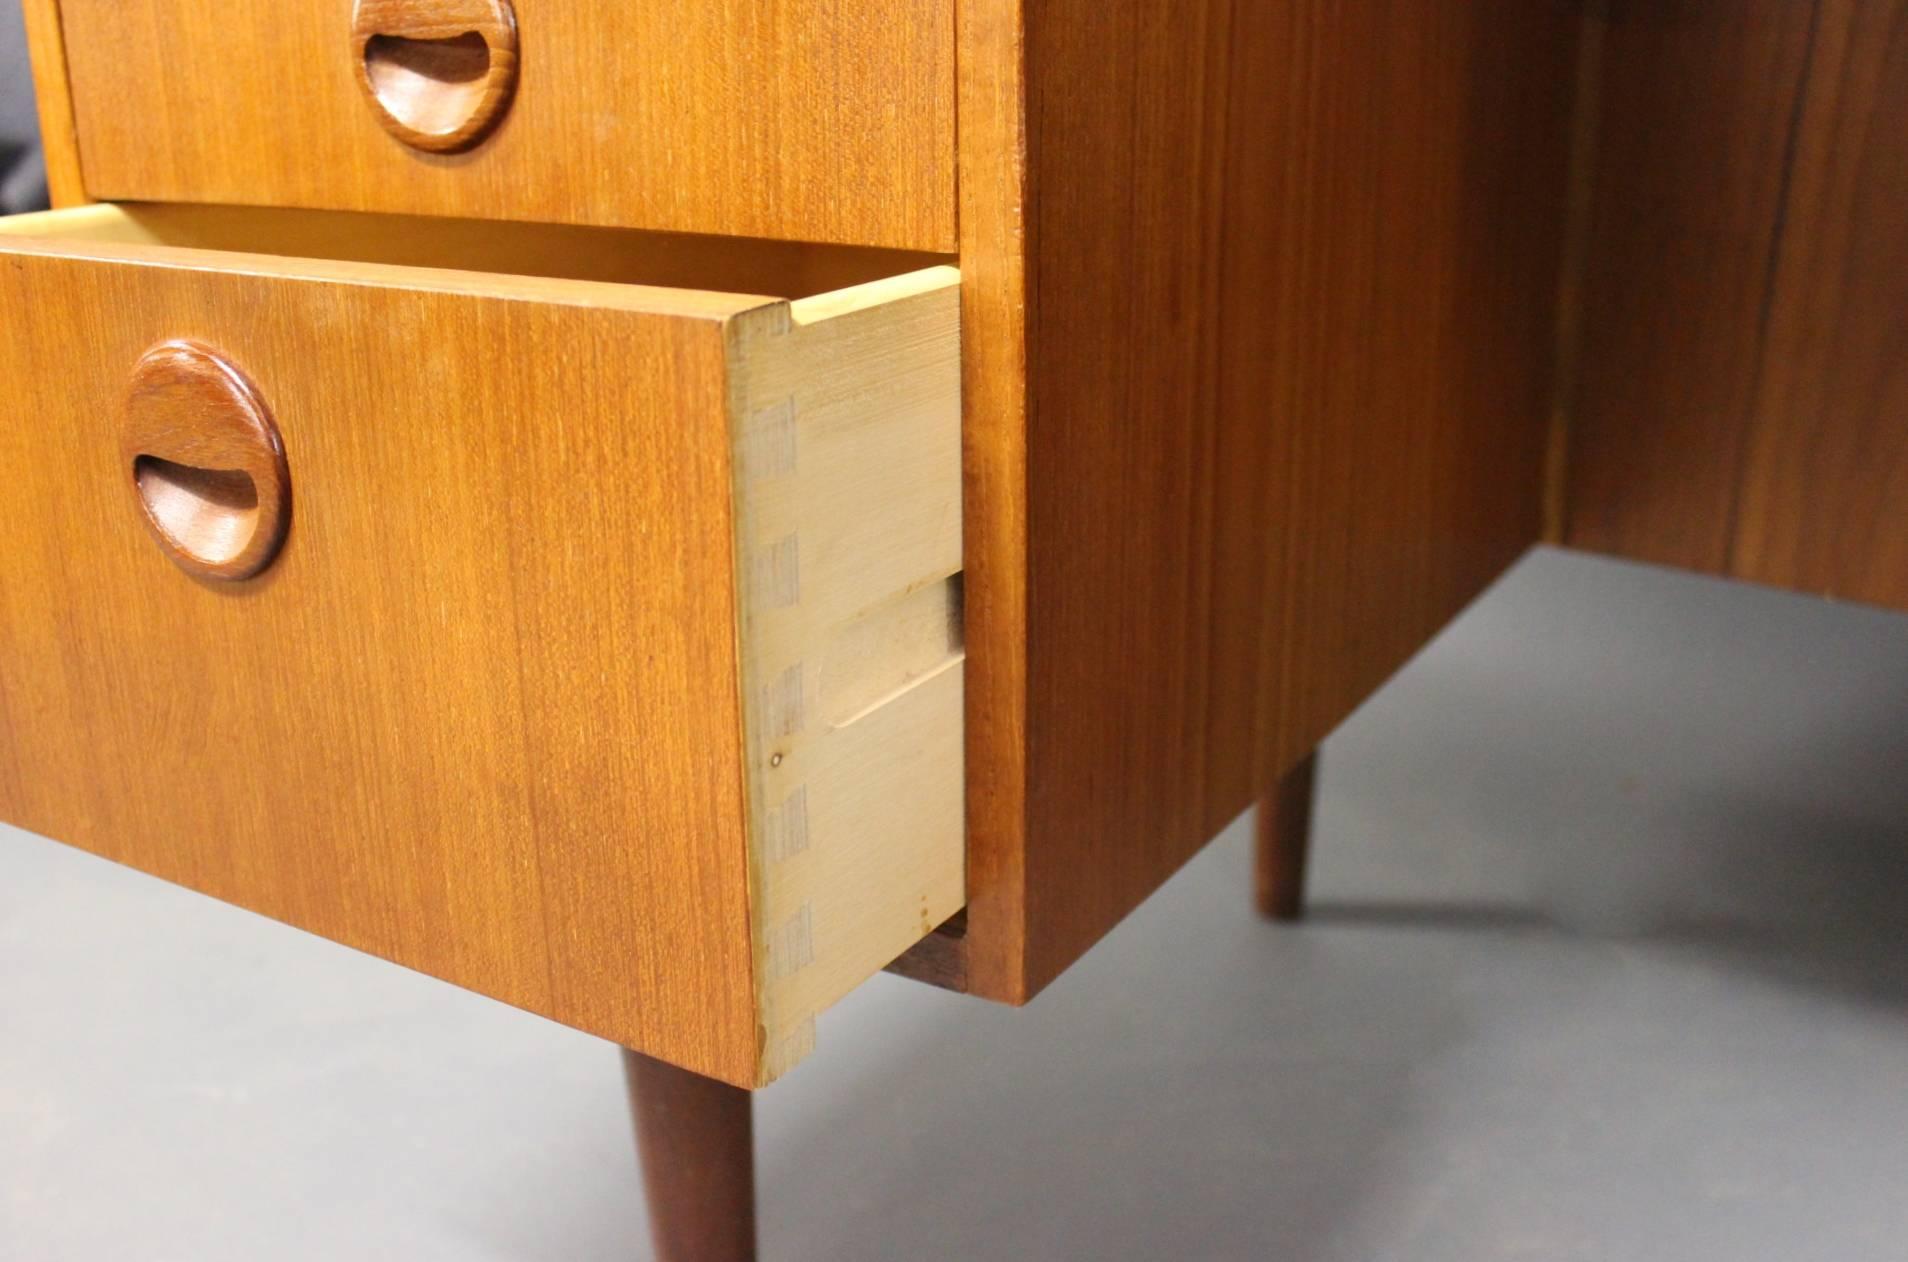 Desk in Teak Designed by Kai Kristiansen, Danish Design from the 1960s 2